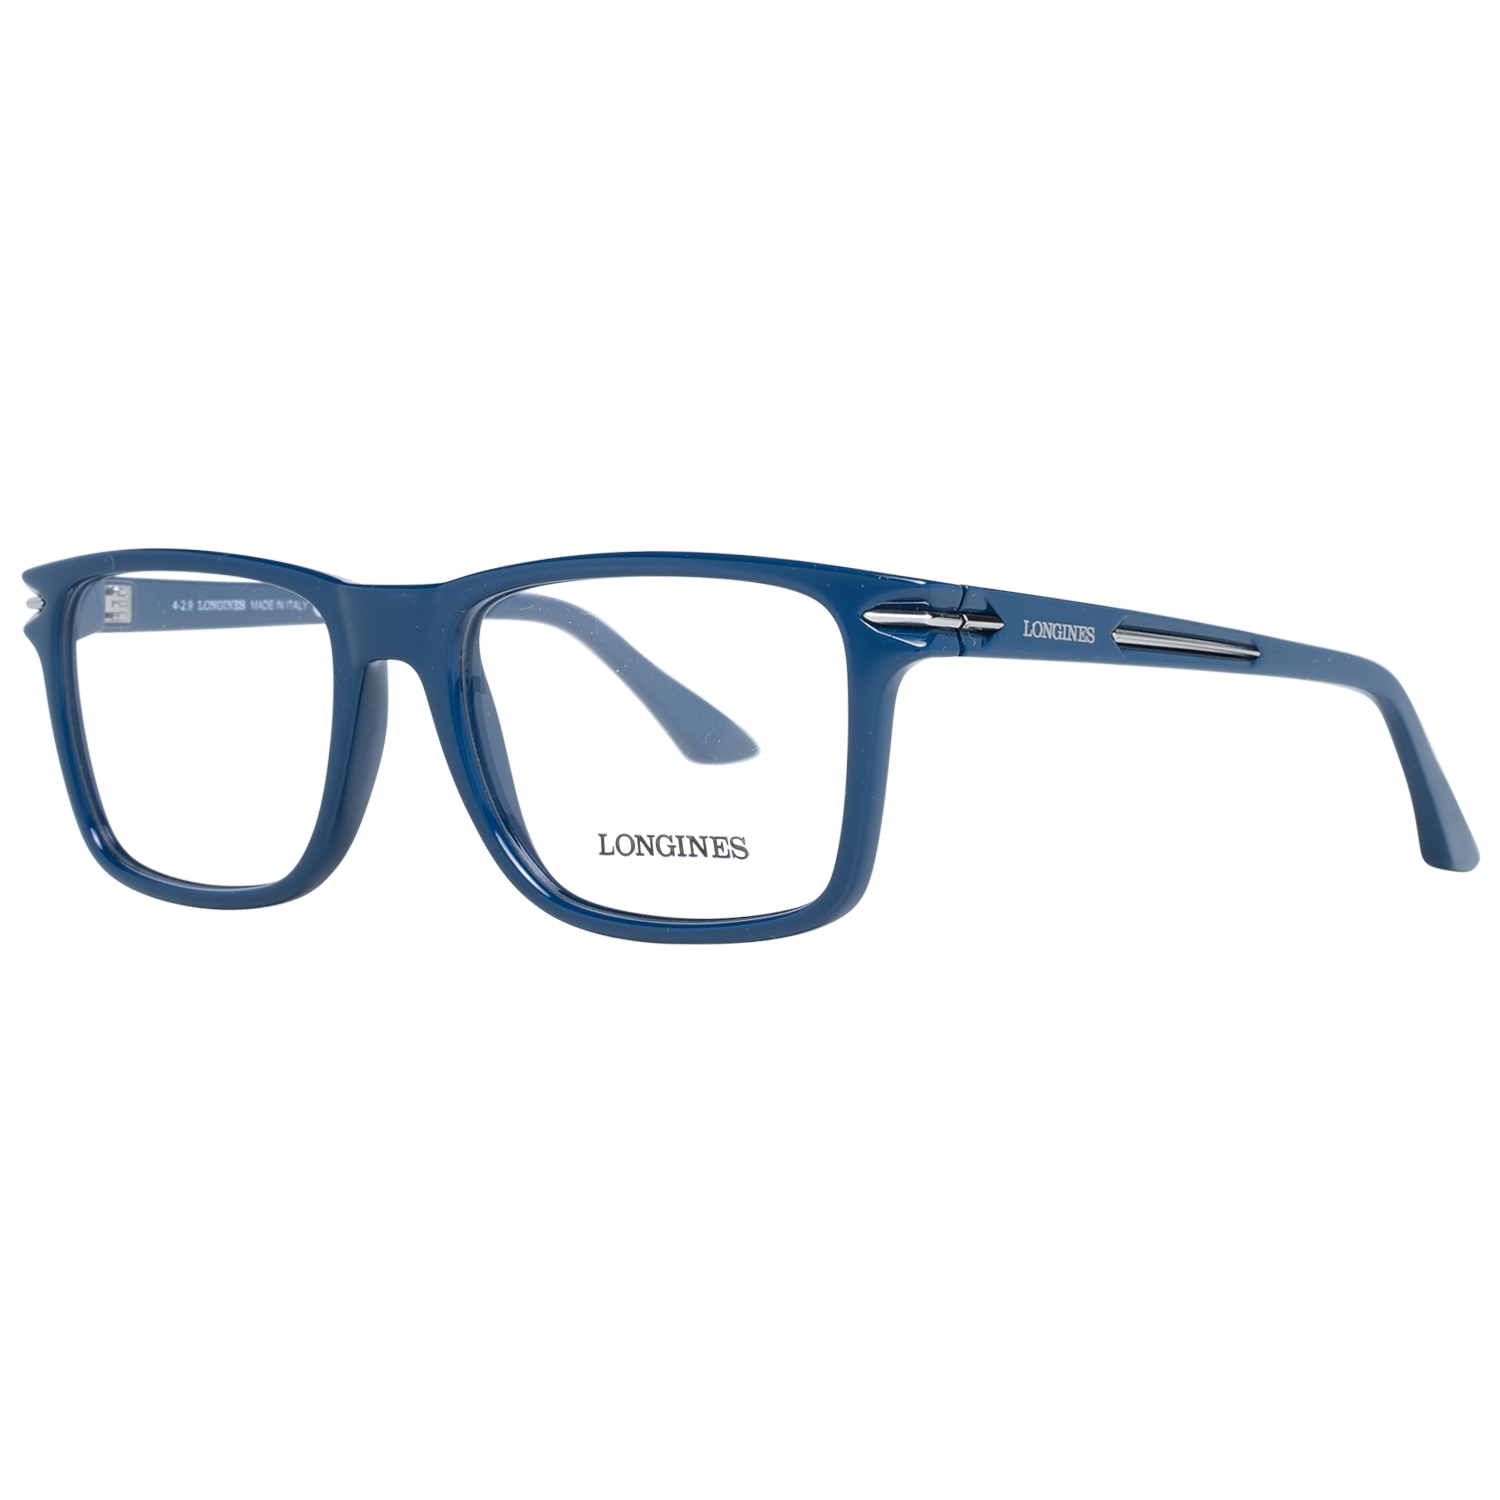 Longines Frames Longines Optical Frame LG5008-H 090 53 Eyeglasses Eyewear UK USA Australia 